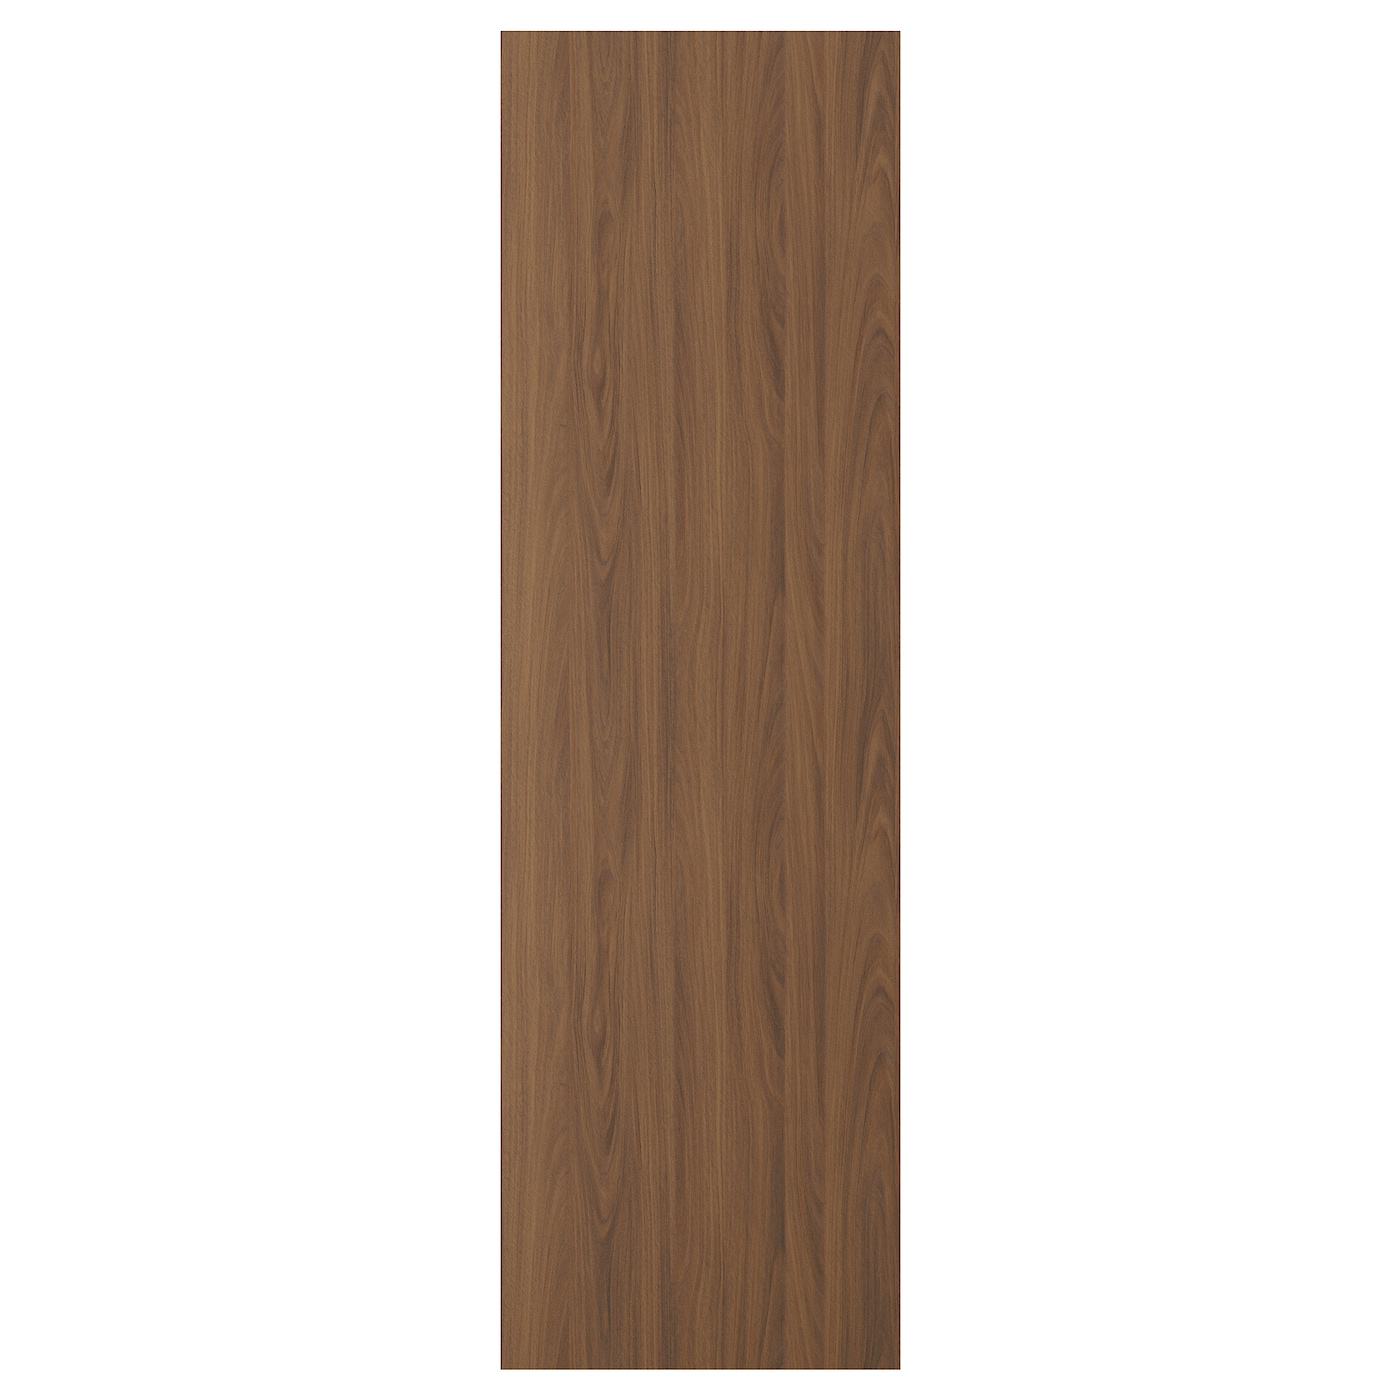 Дверца  - TISTORP IKEA/ ТИСТОРП ИКЕА,  200х60 см, коричневый